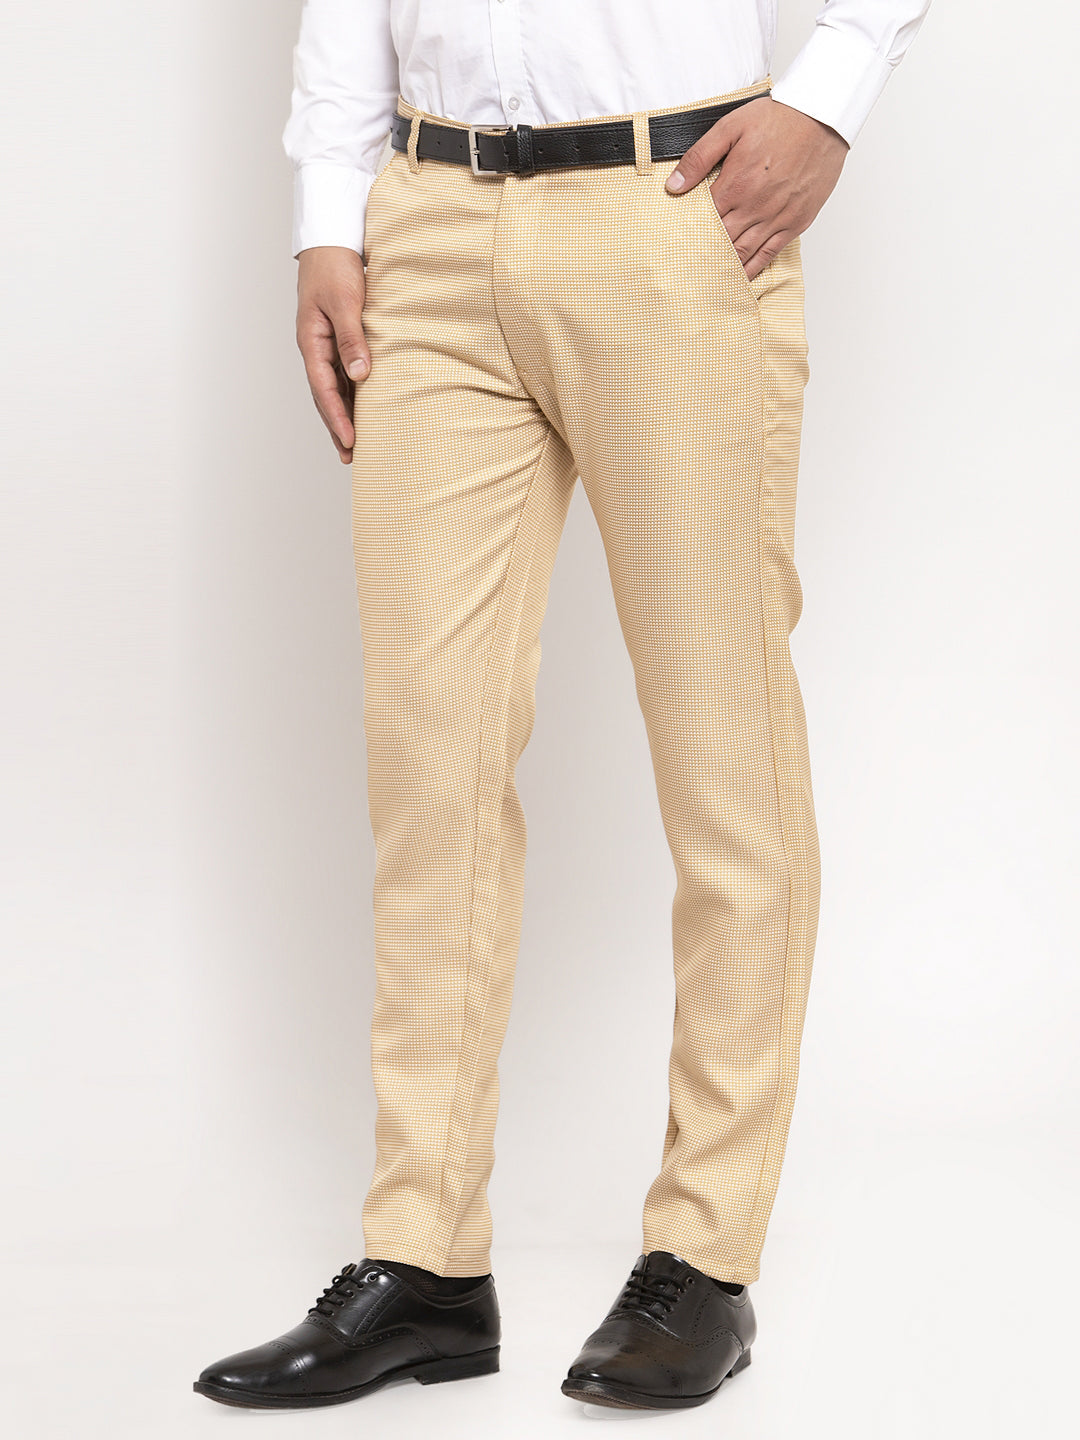 28-40 Pan America Mens Formal Trousers at Rs 995 in Kolkata | ID:  16434830230